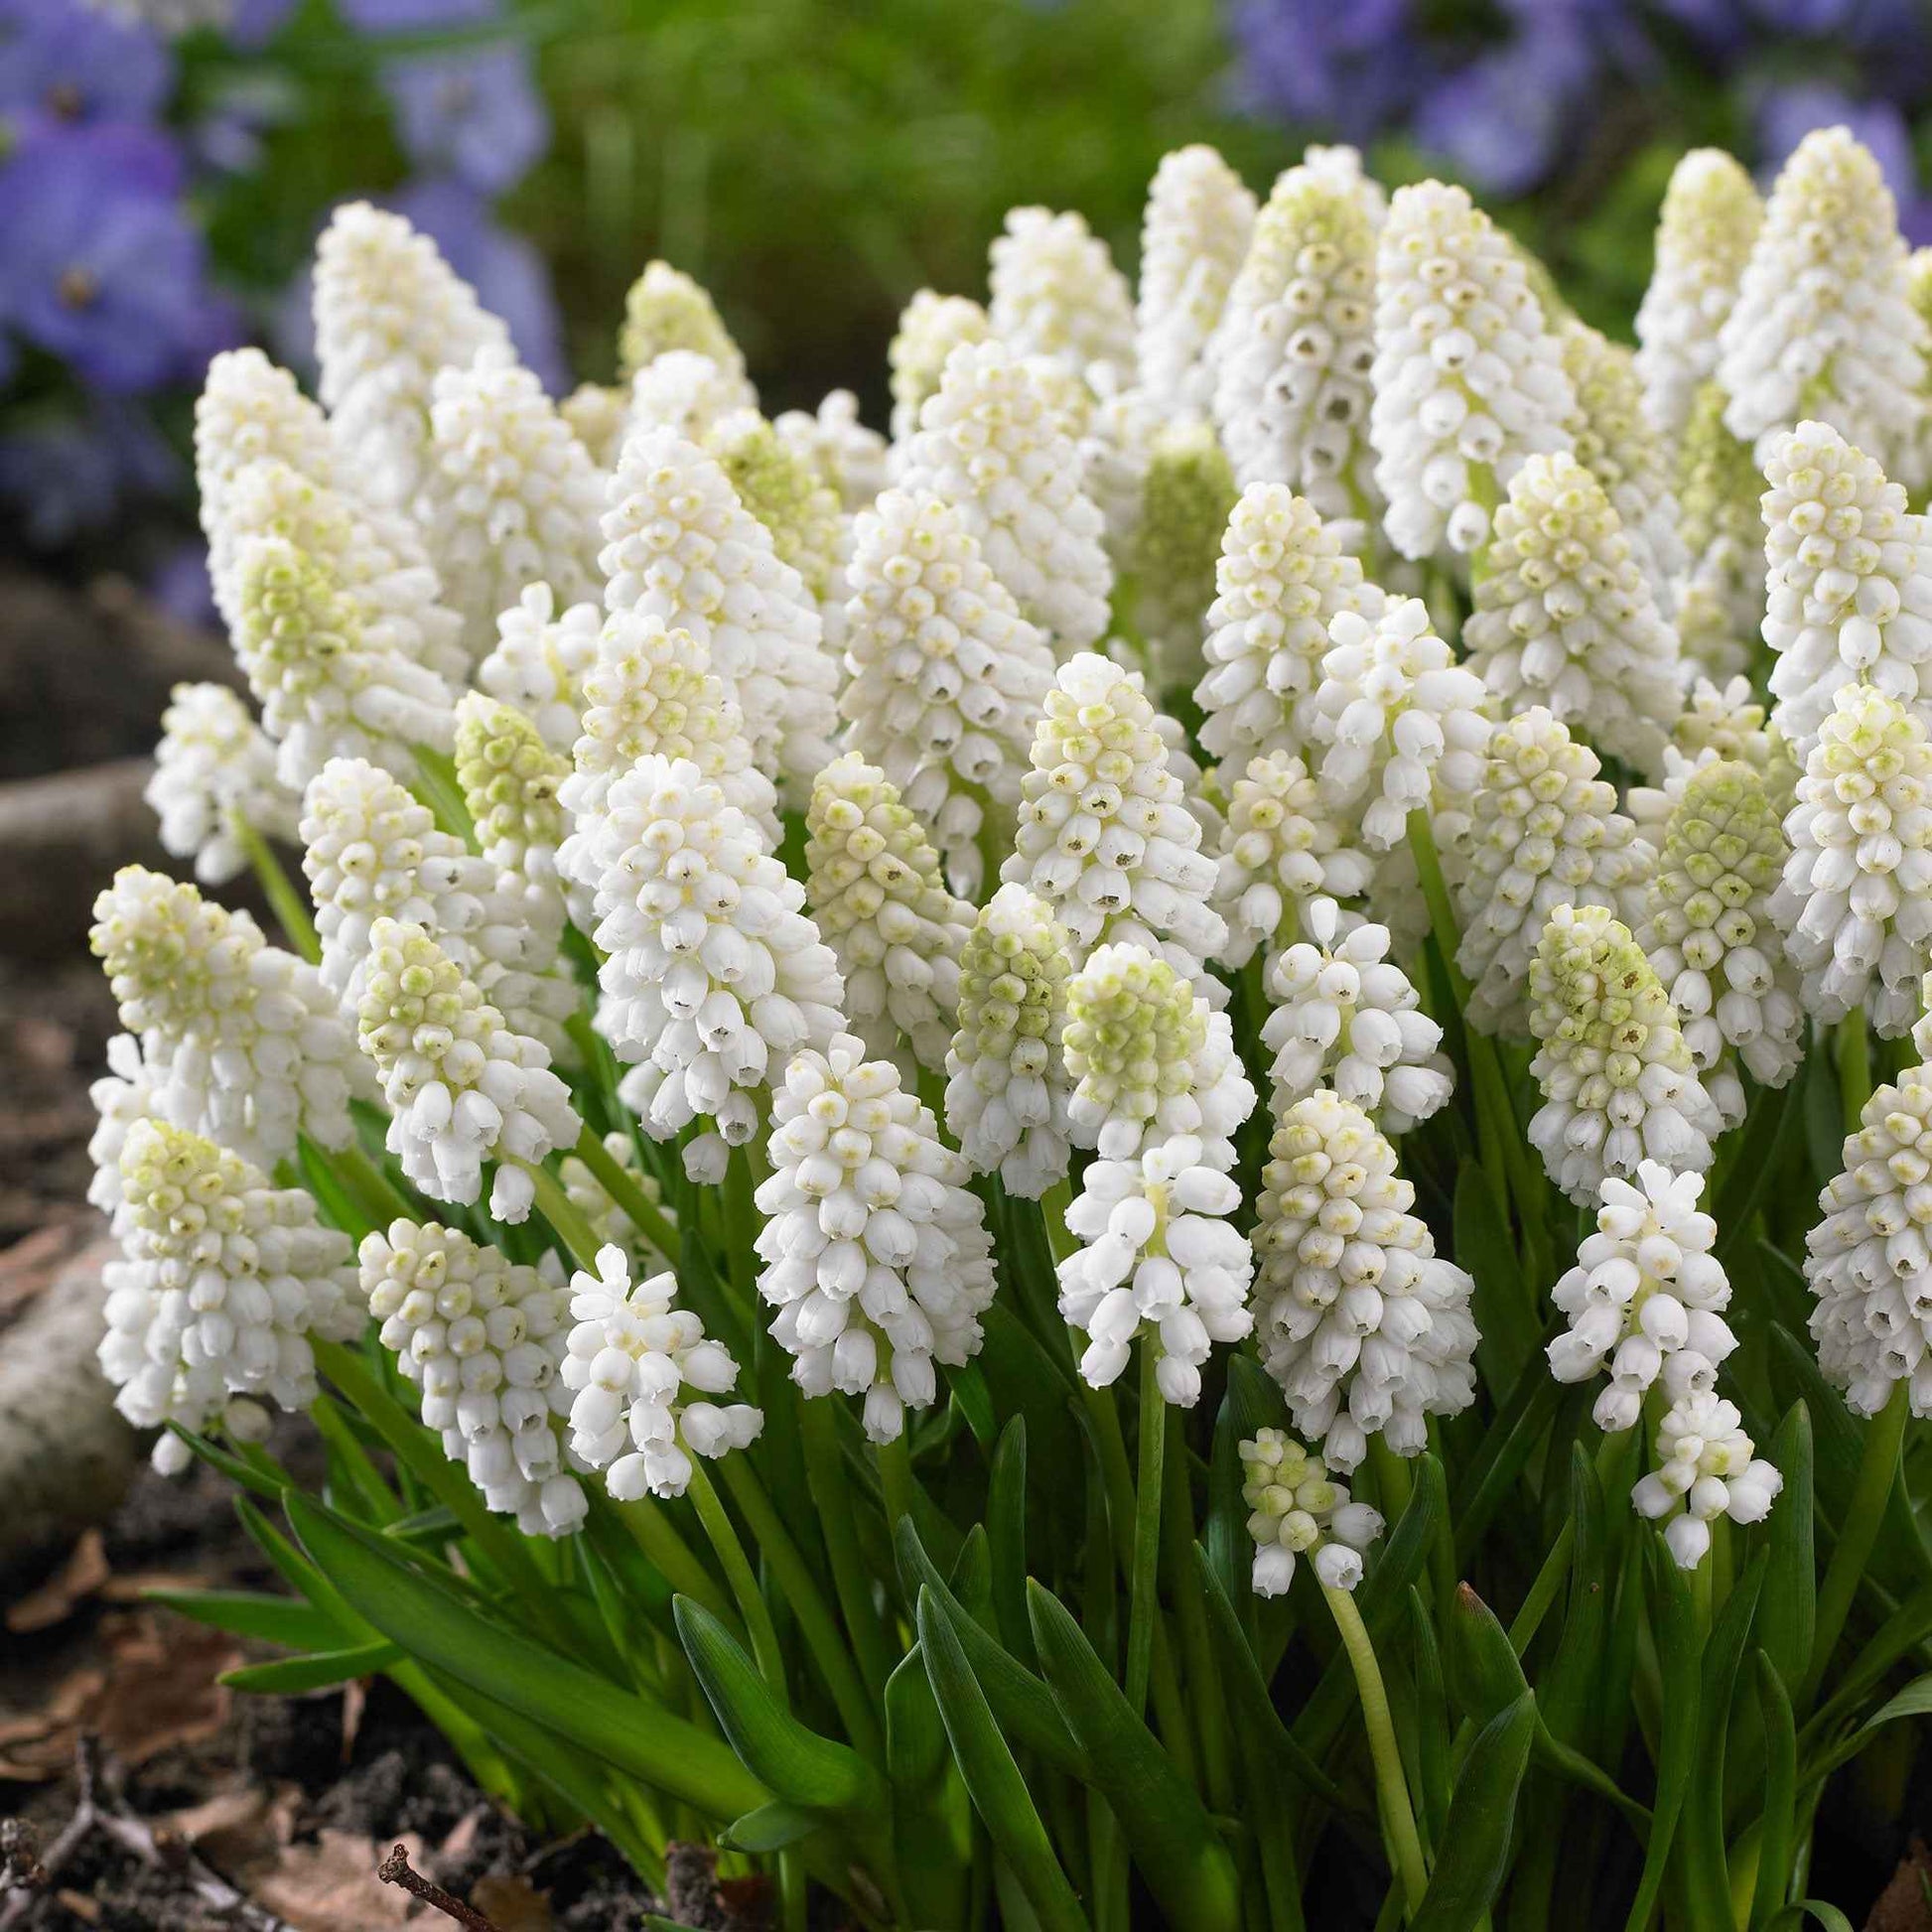 40x Muscari blanc Muscari 'White Magic' blanc - Bulbes de fleurs attirant les abeilles et les papillons